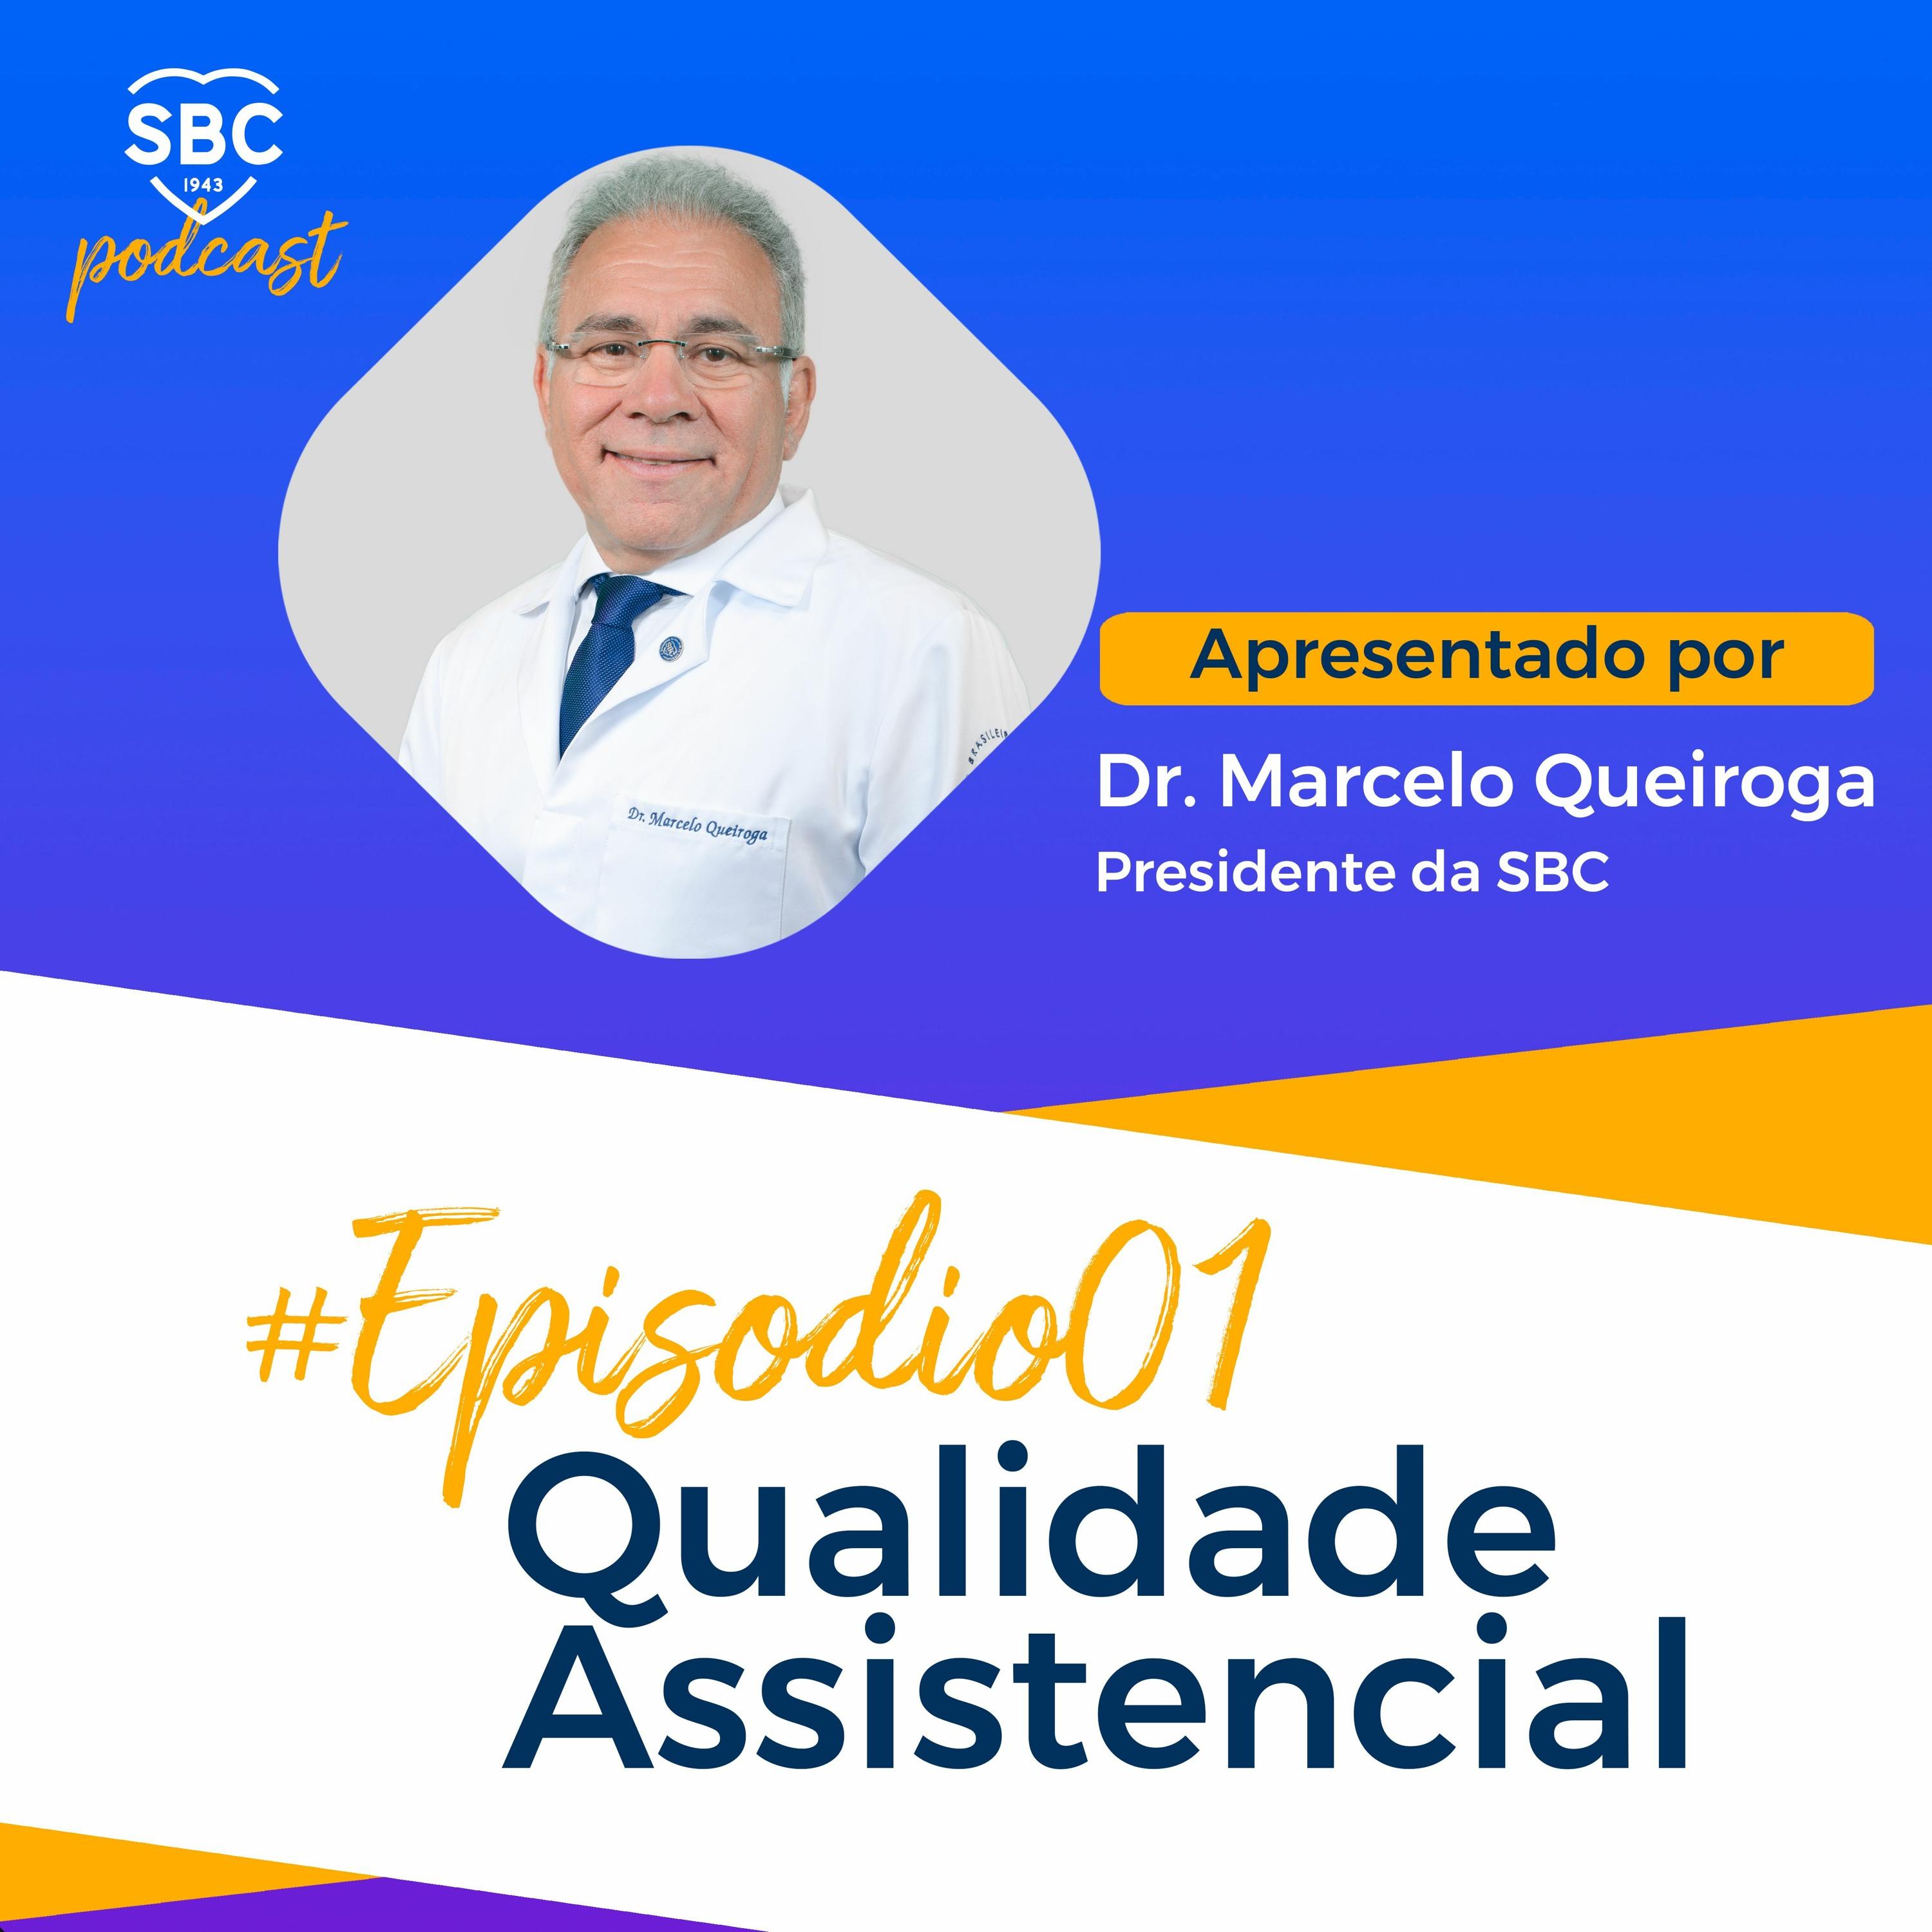 Podcast com o Presidente da Sociedade Brasileira de Cardiologia, Marcelo Queiroga, sobre as nova iniciativas na área da Qualidade Assistencial.